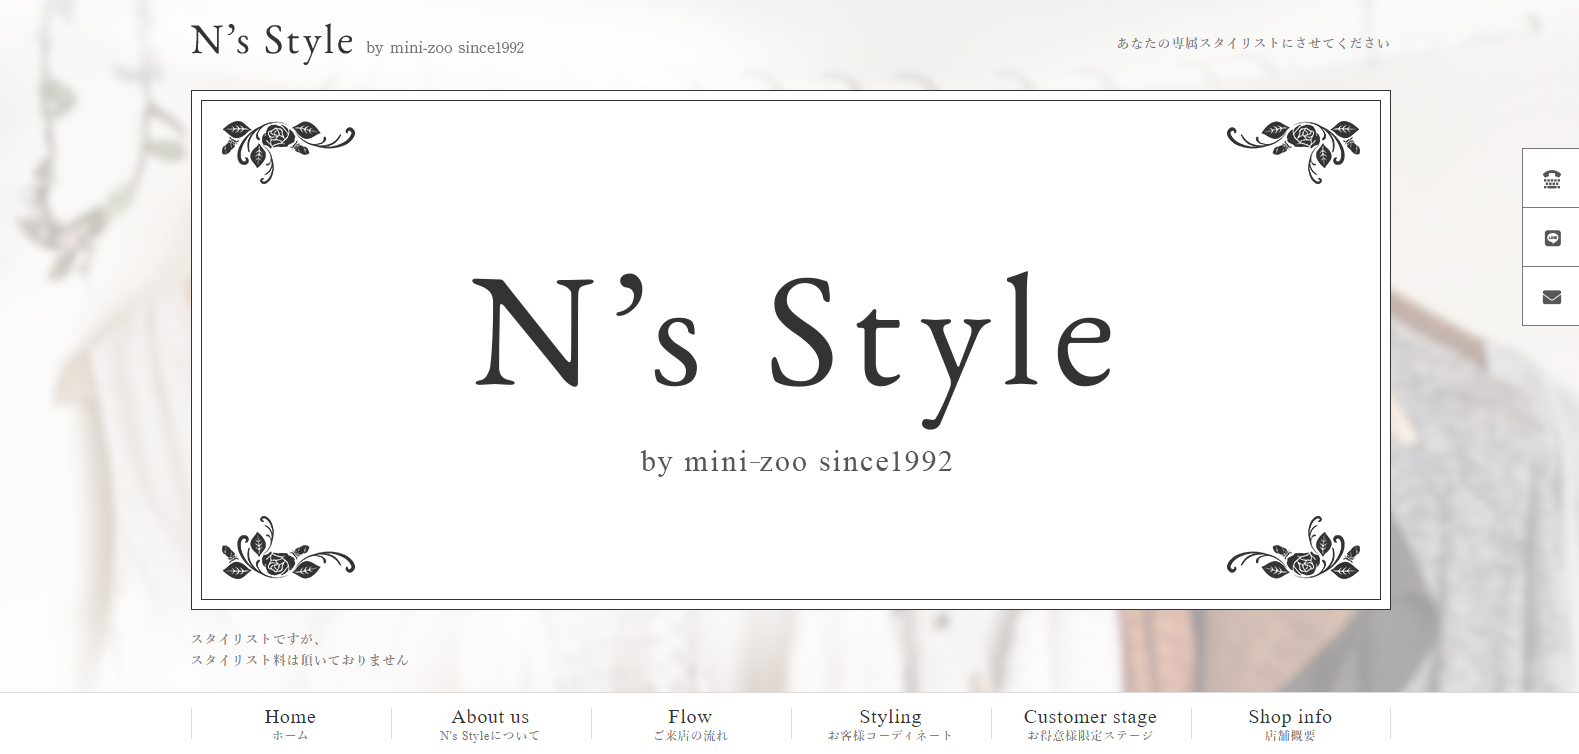 N‘s Style by mini-zoo